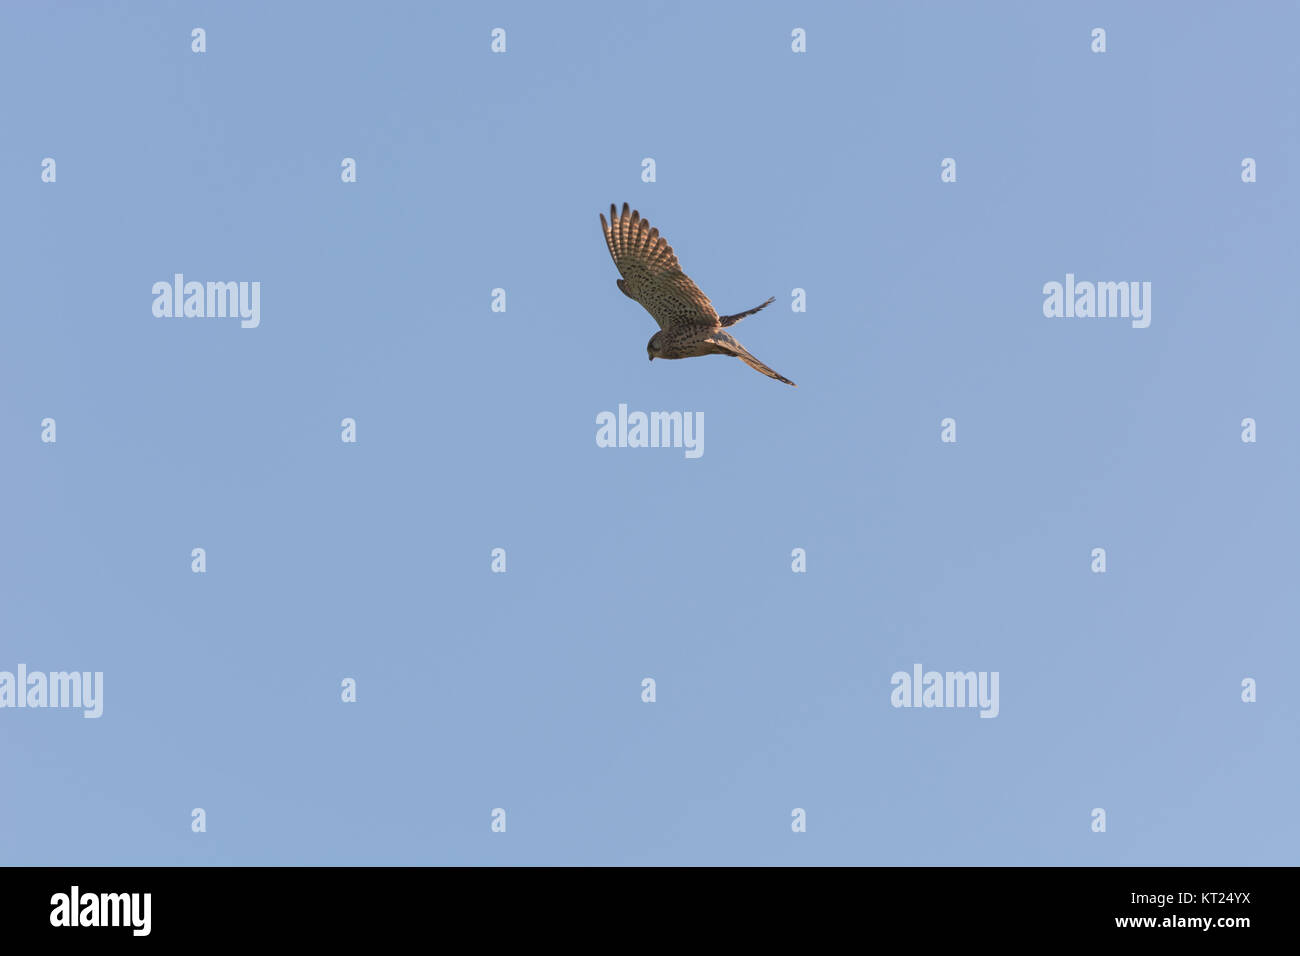 Vogel stehen auf einem Punkt in der Luft Stockfotografie - Alamy